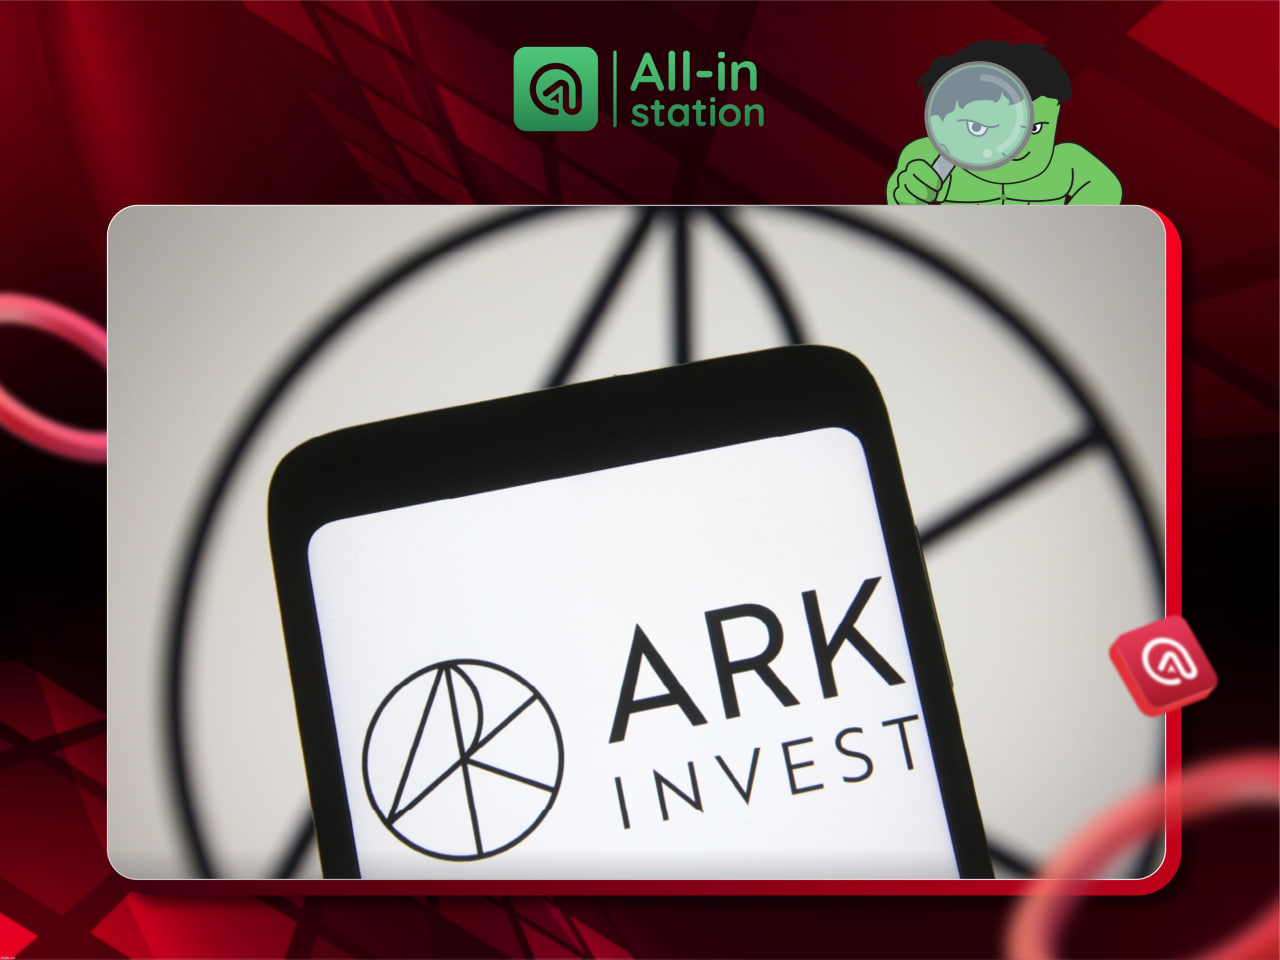 ark invest